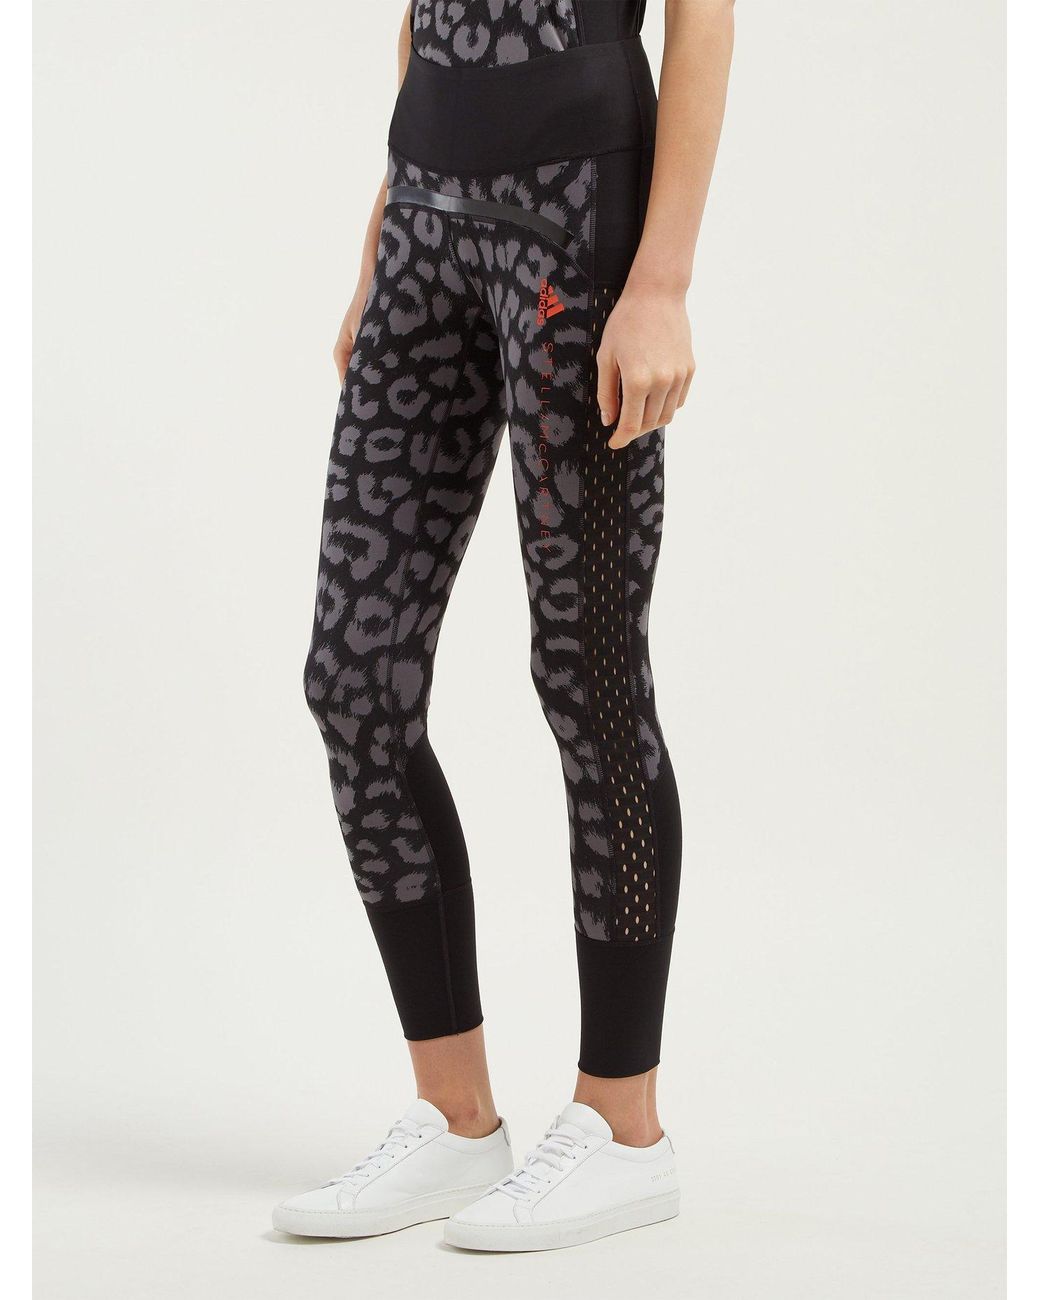 adidas By Stella McCartney Believe This Comfort Leopard Print Leggings in  Black Print (Black) | Lyst